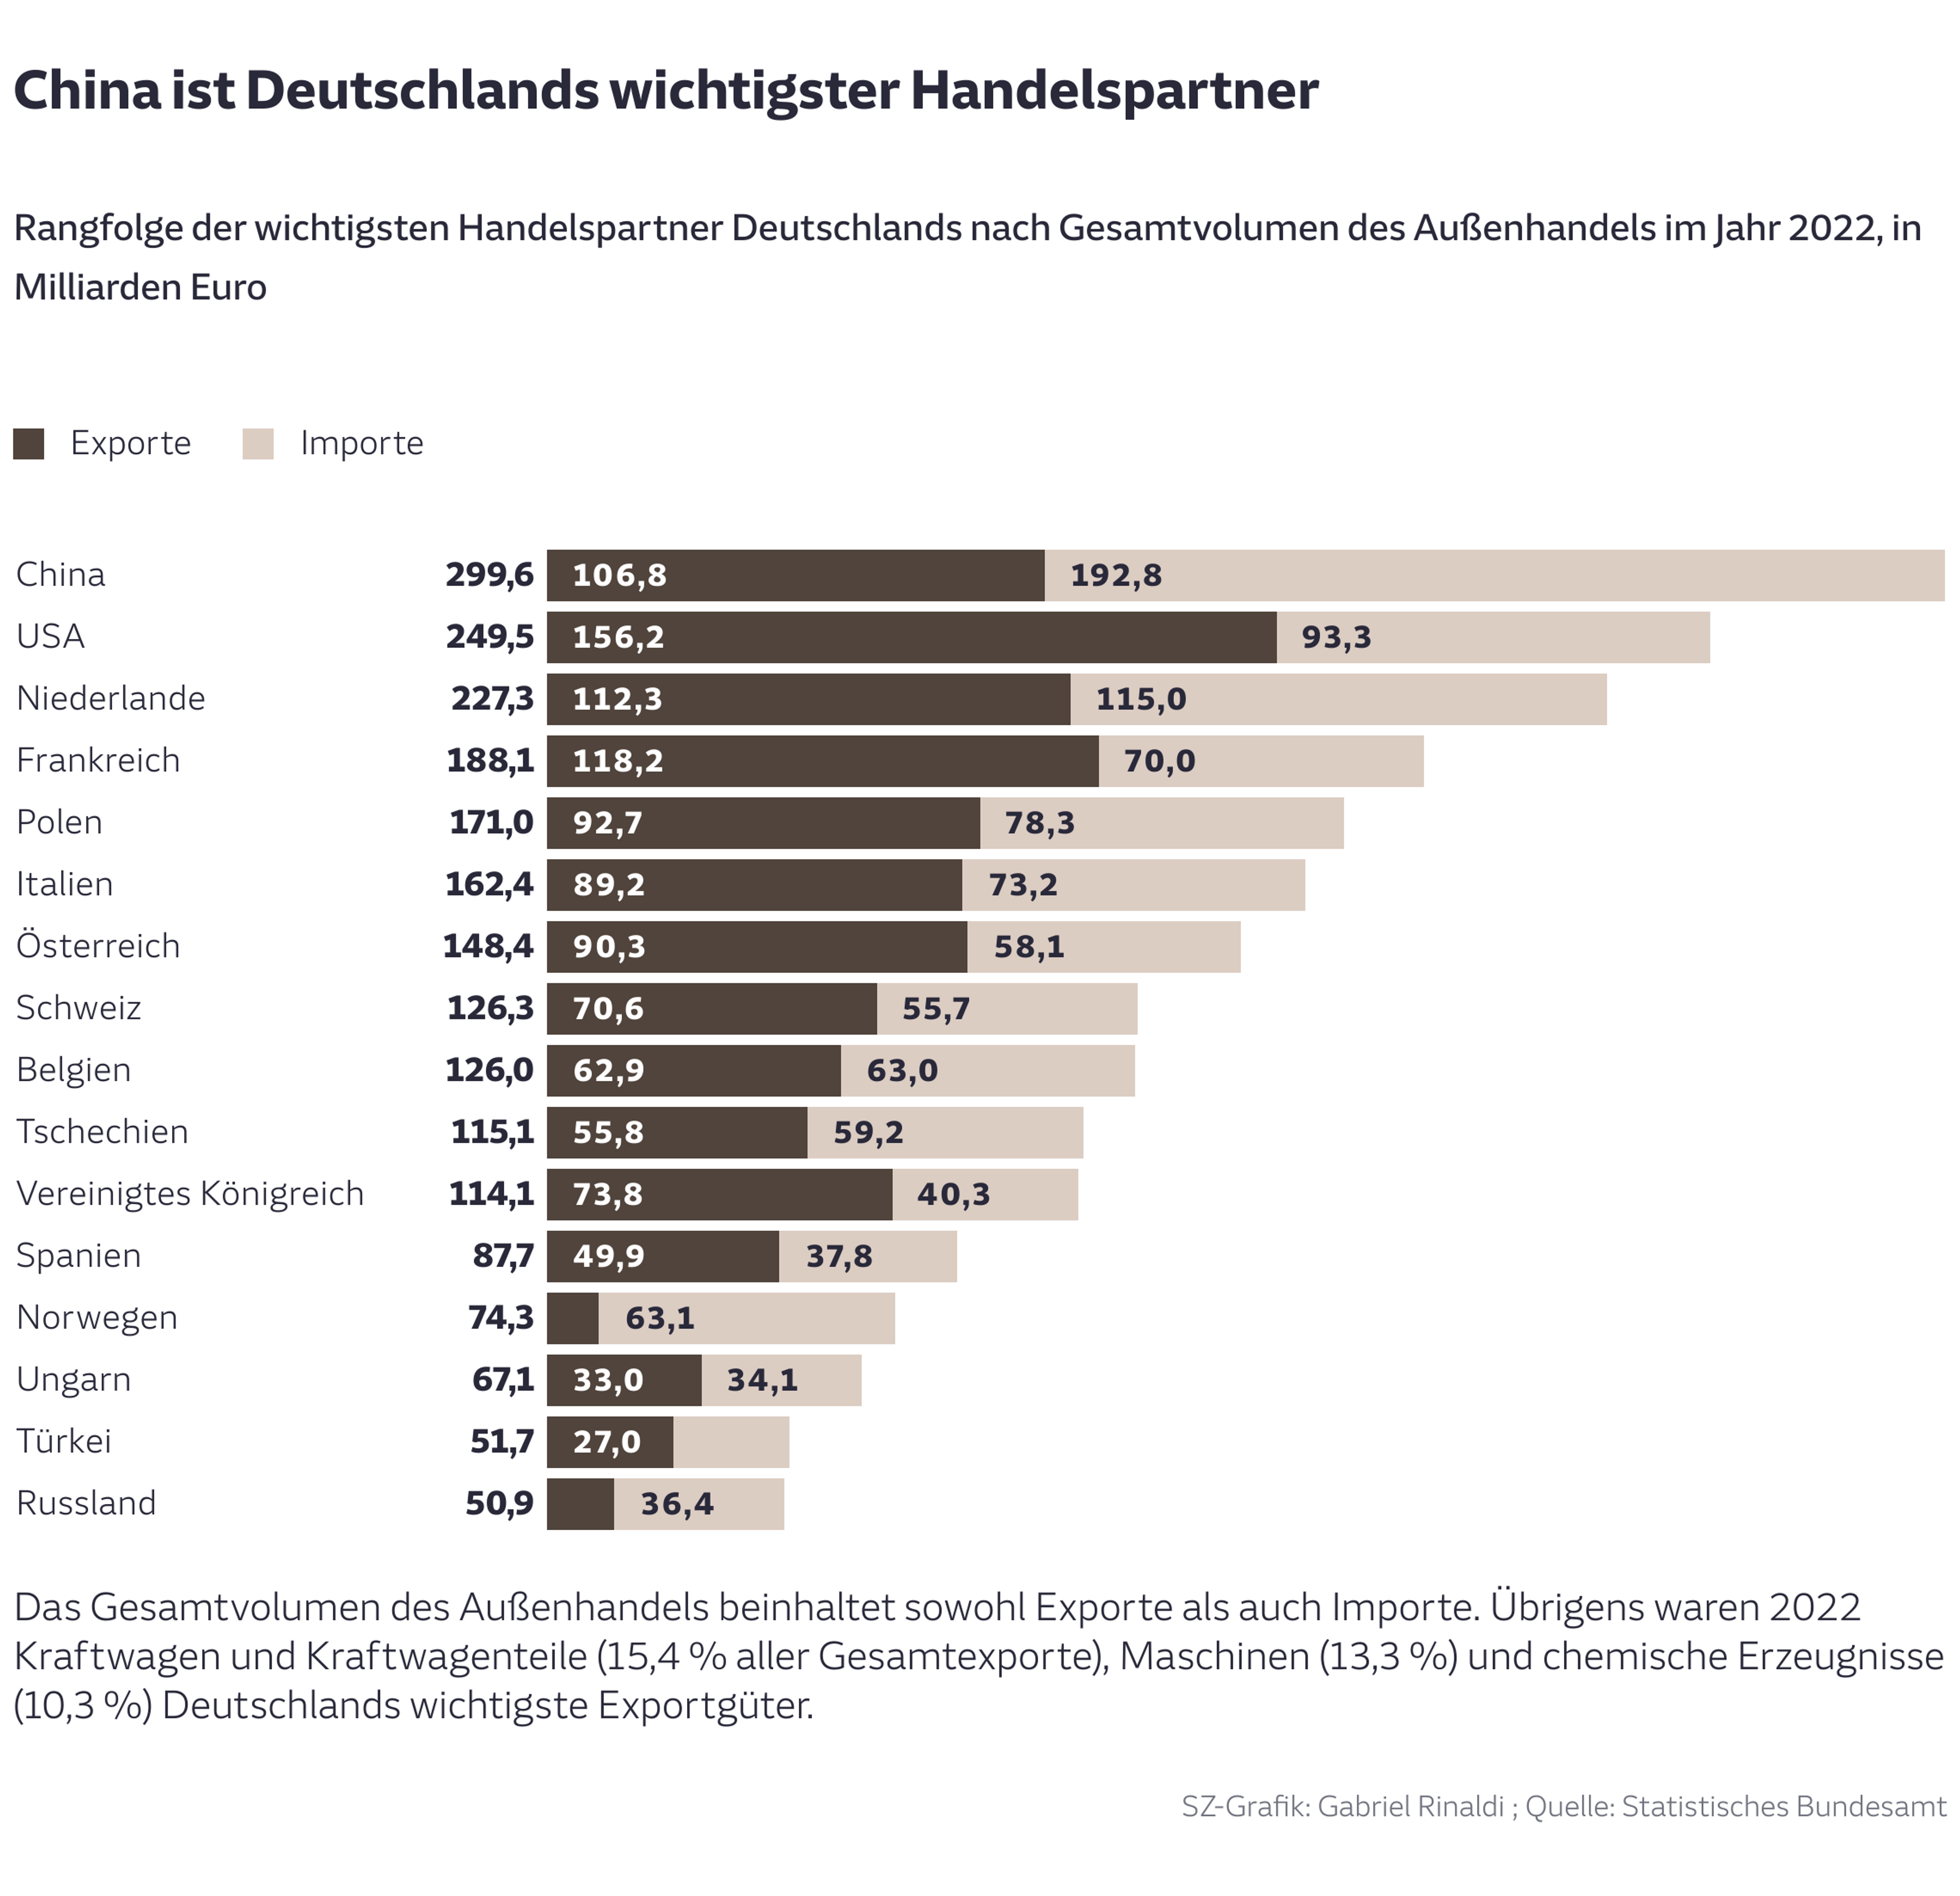 China ist Deutschlands wichtigster Handelspartner